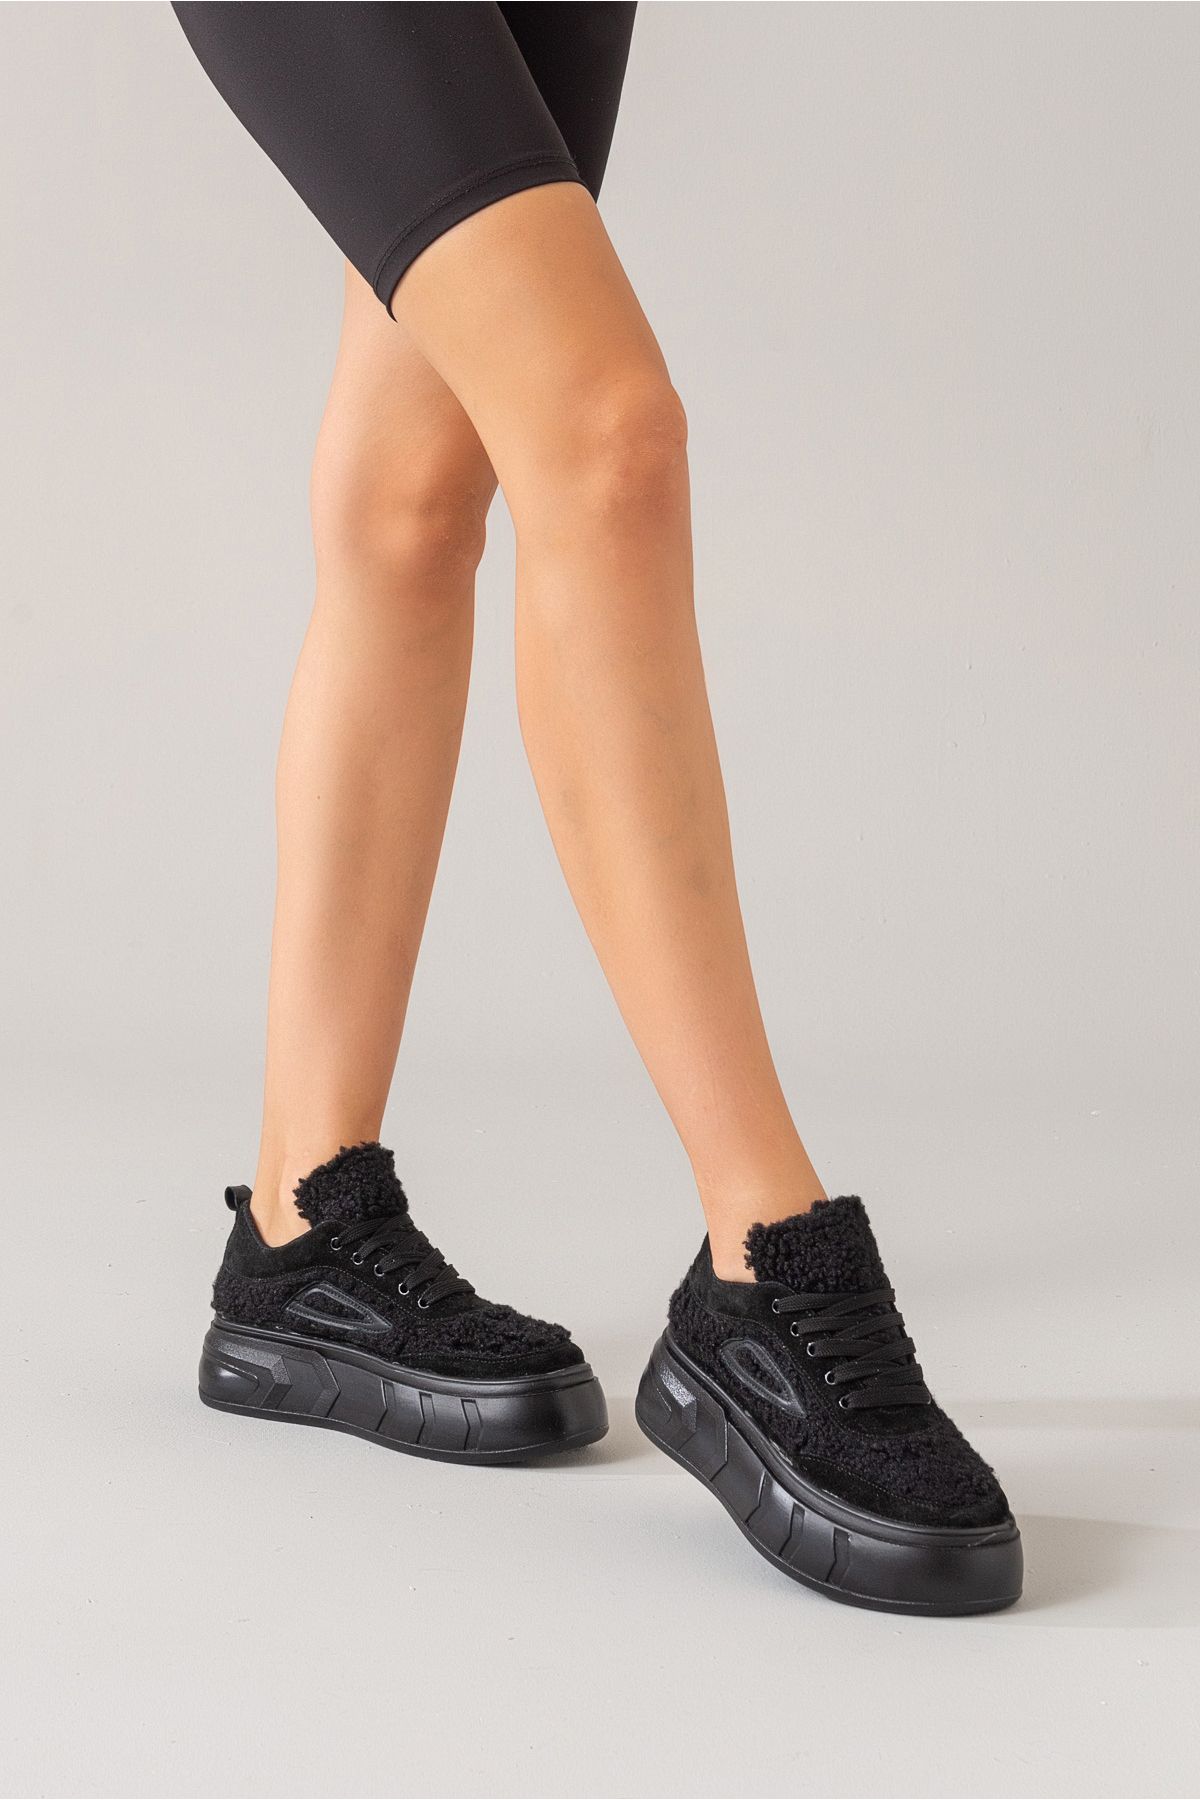 Zeynep Sıradağlı Alego Kadın Deri Spor Ayakkabı Siyah Süet-Siyah Kürk